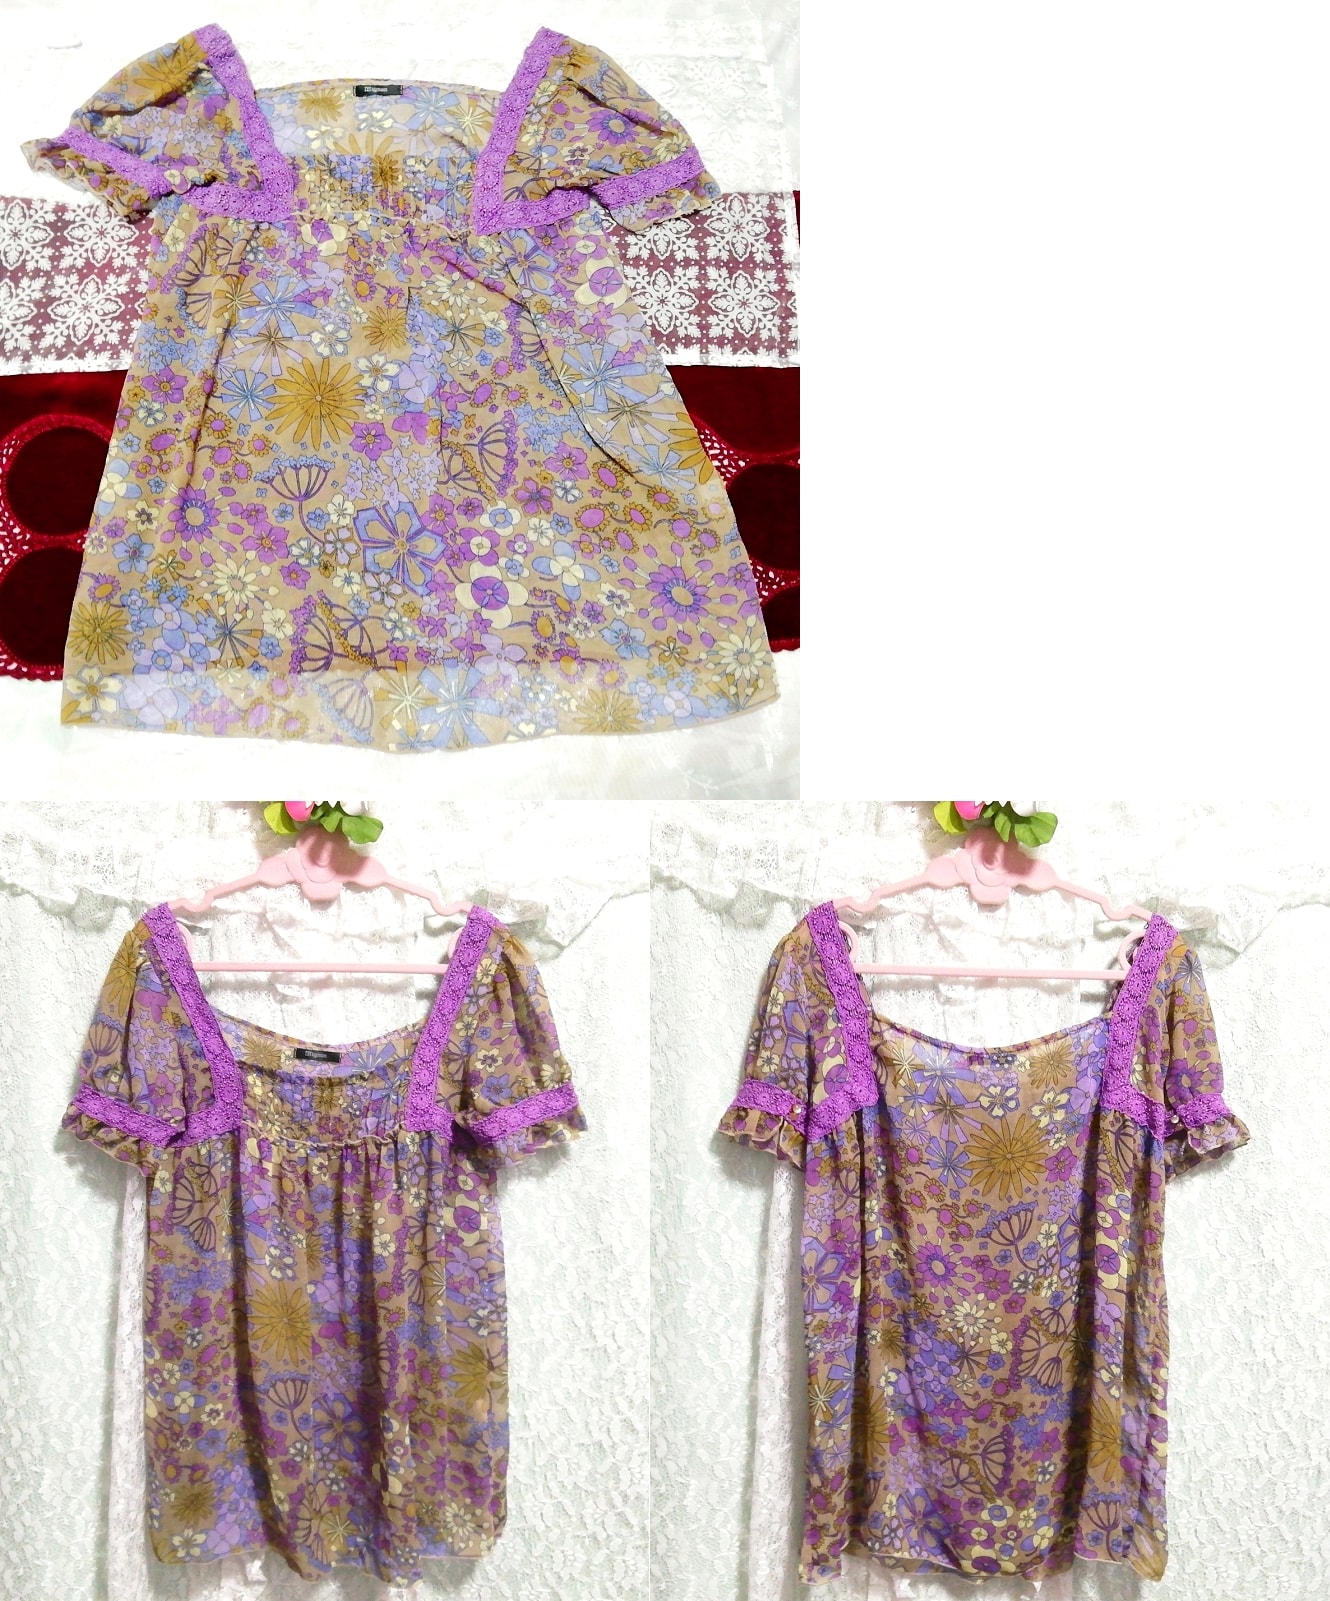 Purple lace floral ethnic pattern chiffon tunic negligee nightgown, tunic, short sleeve, m size